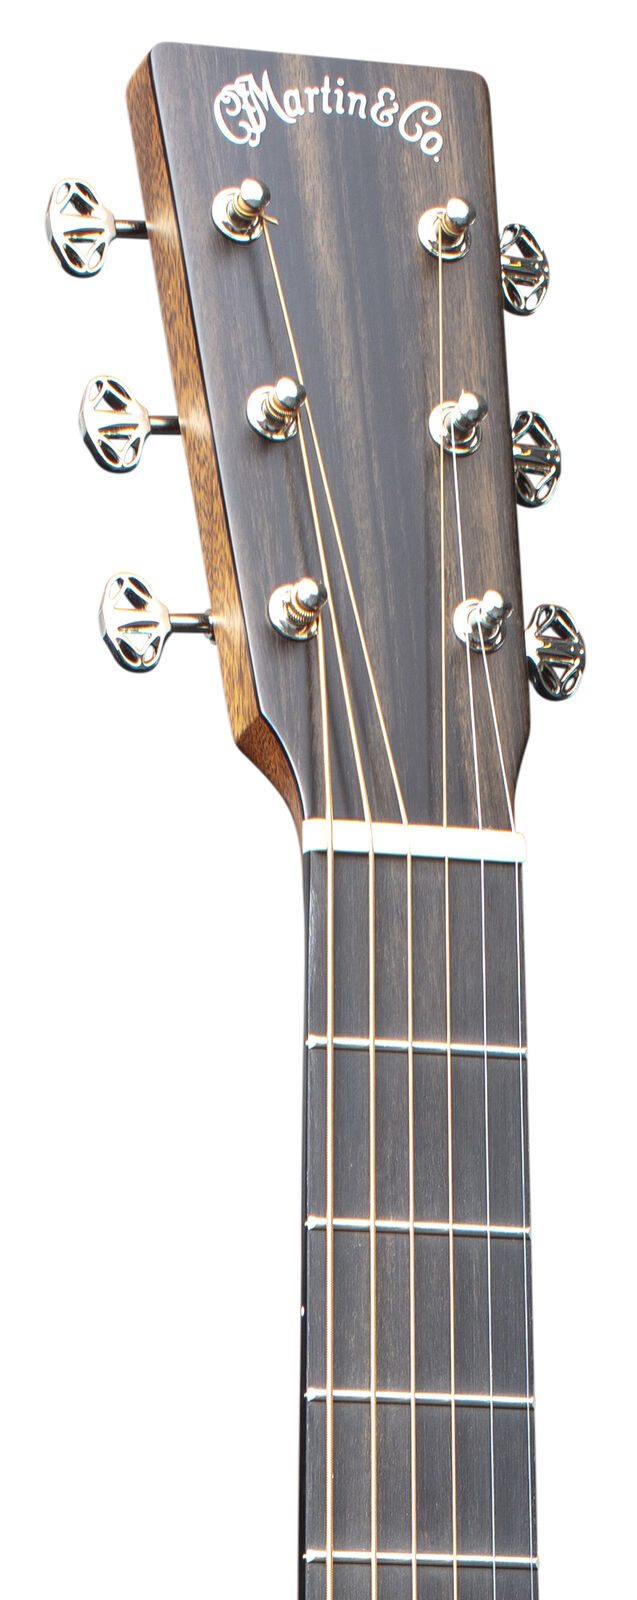 Martin SC-13E Special Burst Guitar